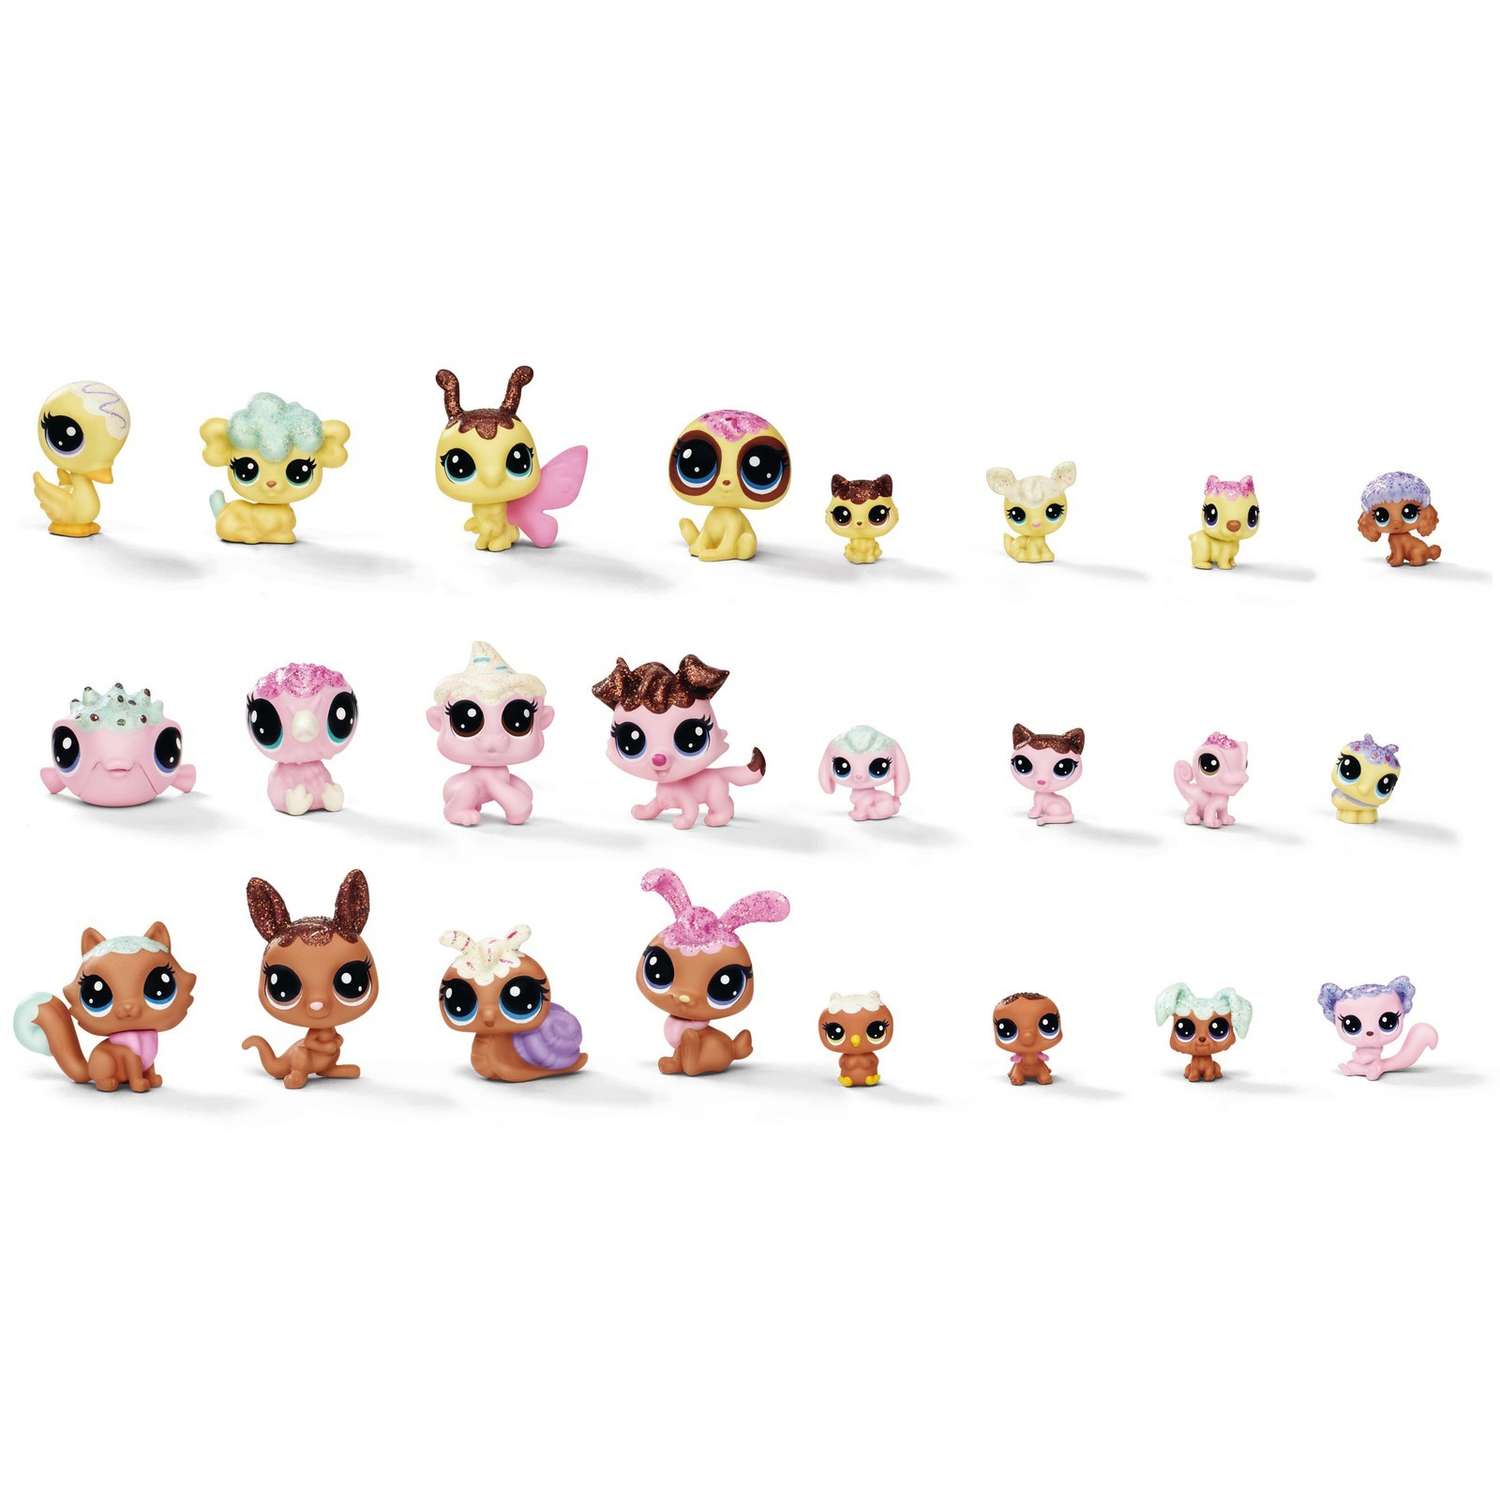 Набор игрушек Littlest Pet Shop 8 зефирных Петов в ассортименте - фото 1